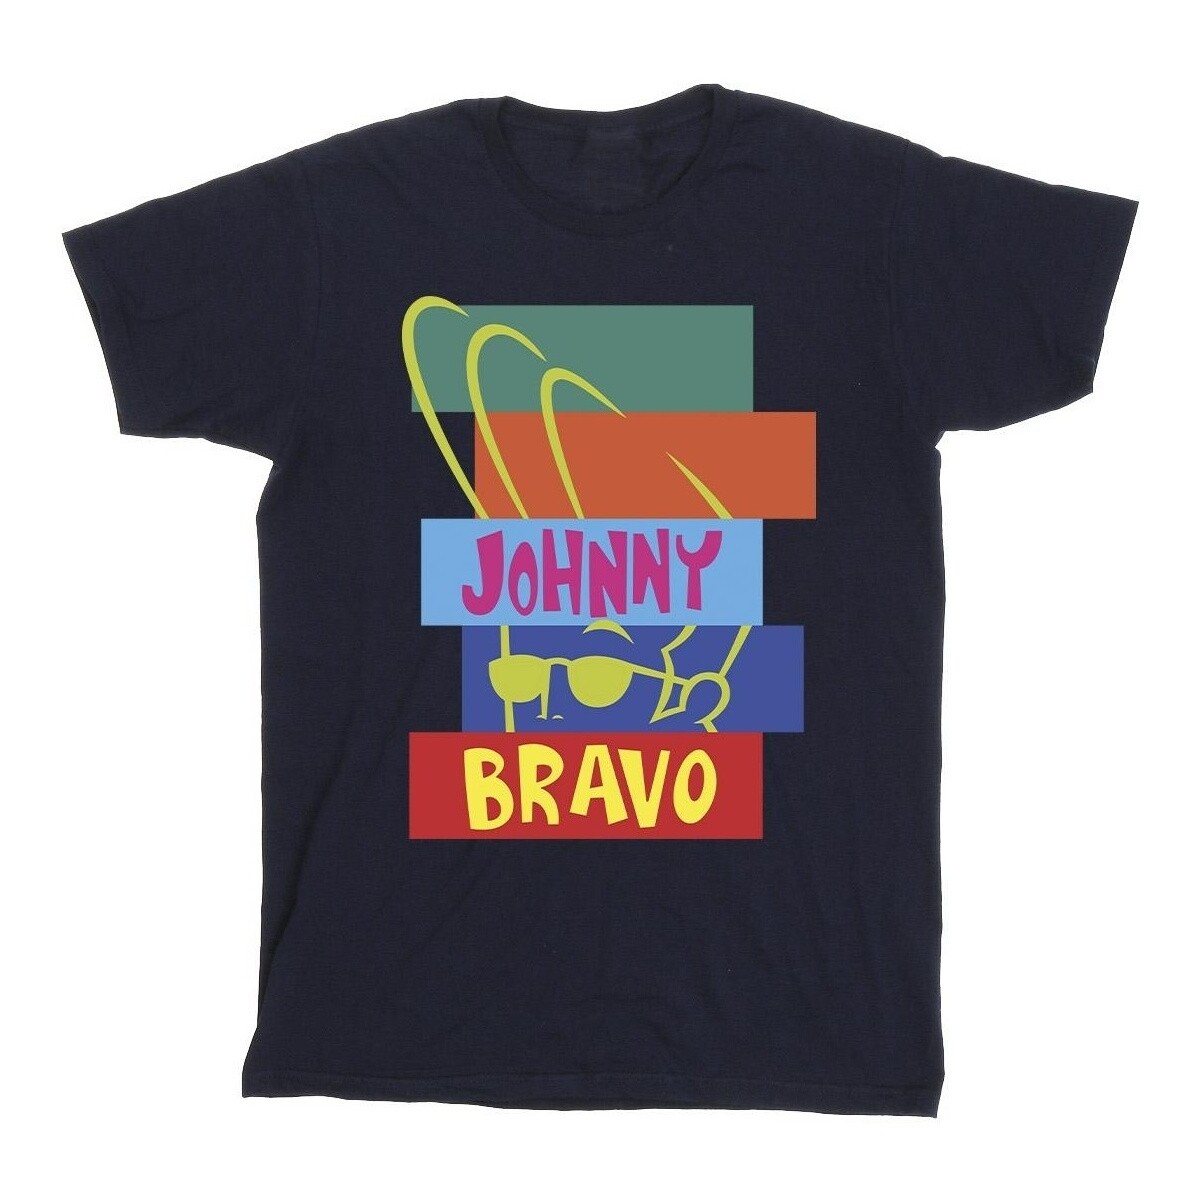 Vêtements Fille T-shirts manches longues Johnny Bravo Rectangle Pop Art Bleu